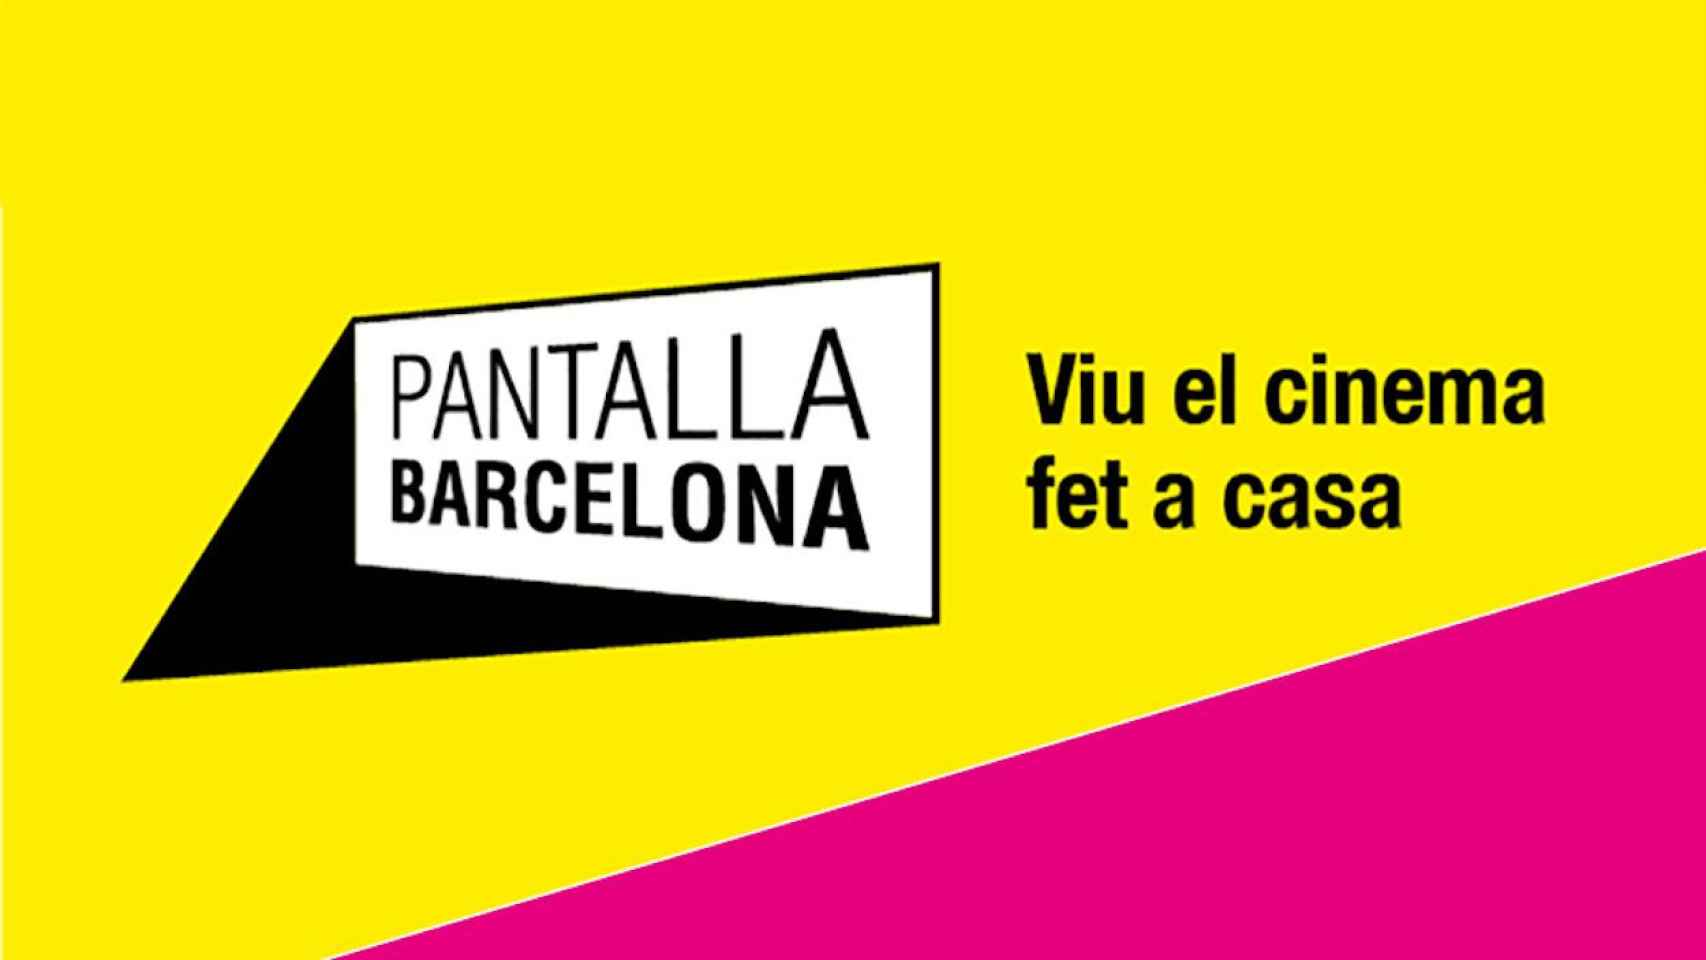 Imagen promocional del festival Pantalla Barcelona / AY. DE BCN